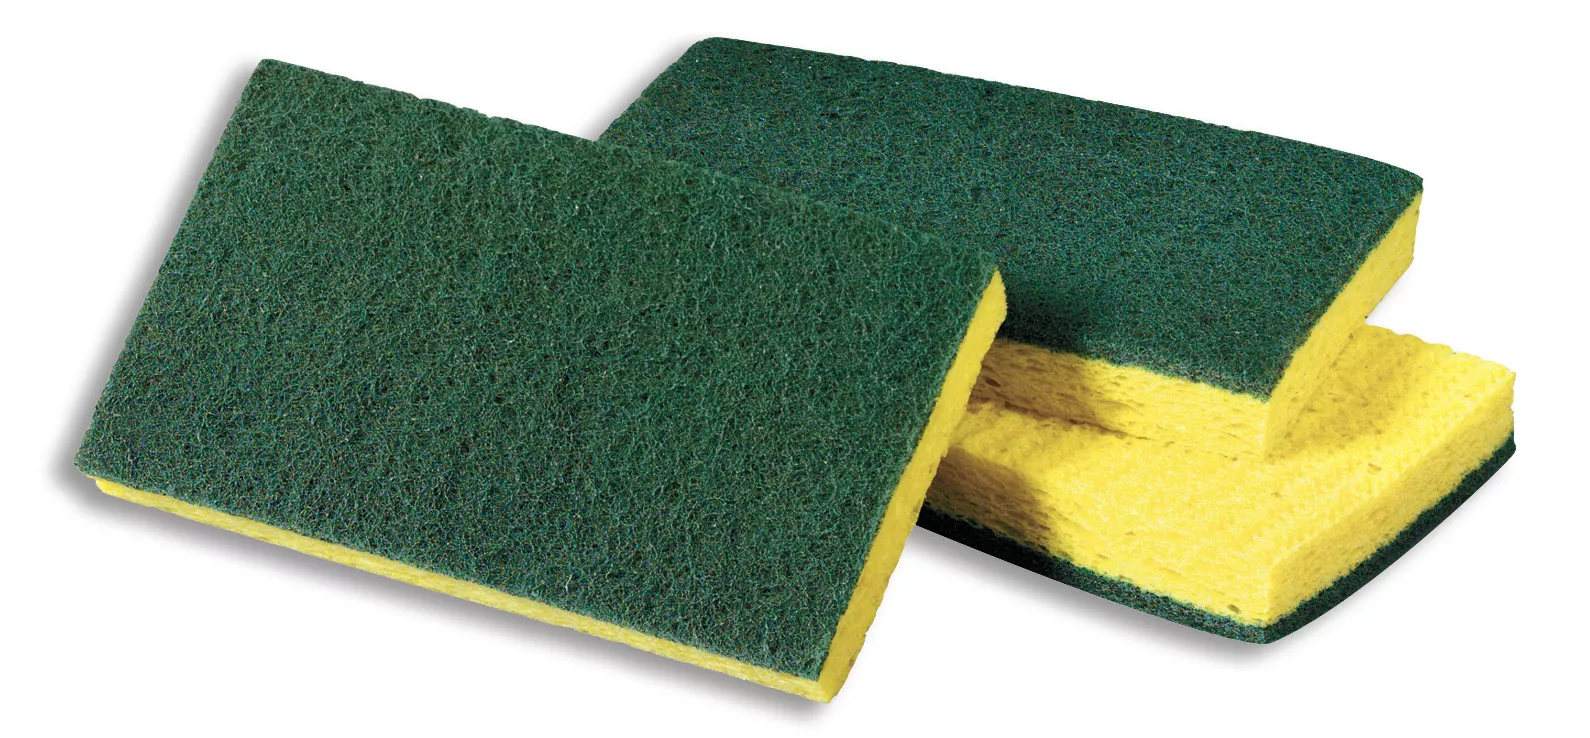 Scotch-Brite™ Medium Duty Scrubbing Sponge 74CC, 6.1 in x 3.6 in x 0.7
in, 10/Pack, 6 Pack/Case